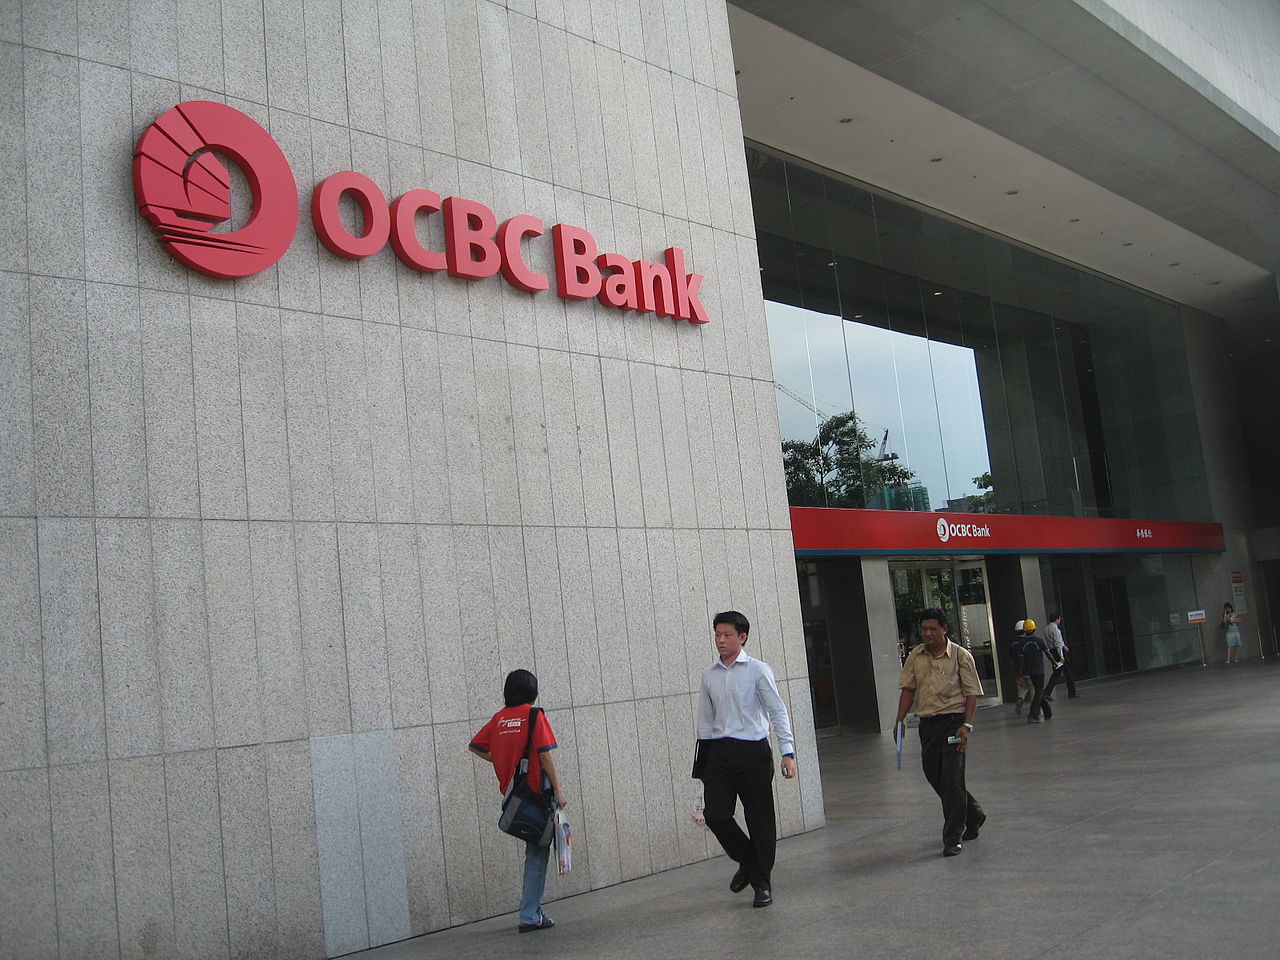 ธนาคาร Ocbc ของสิงคโปร์เปิดระบบ Kill Switch ให้ลูกค้าฟรีซบัญชีทั้งหมดทันทีหากสงสัยว่าถูกฉ้อโกง  | Blognone